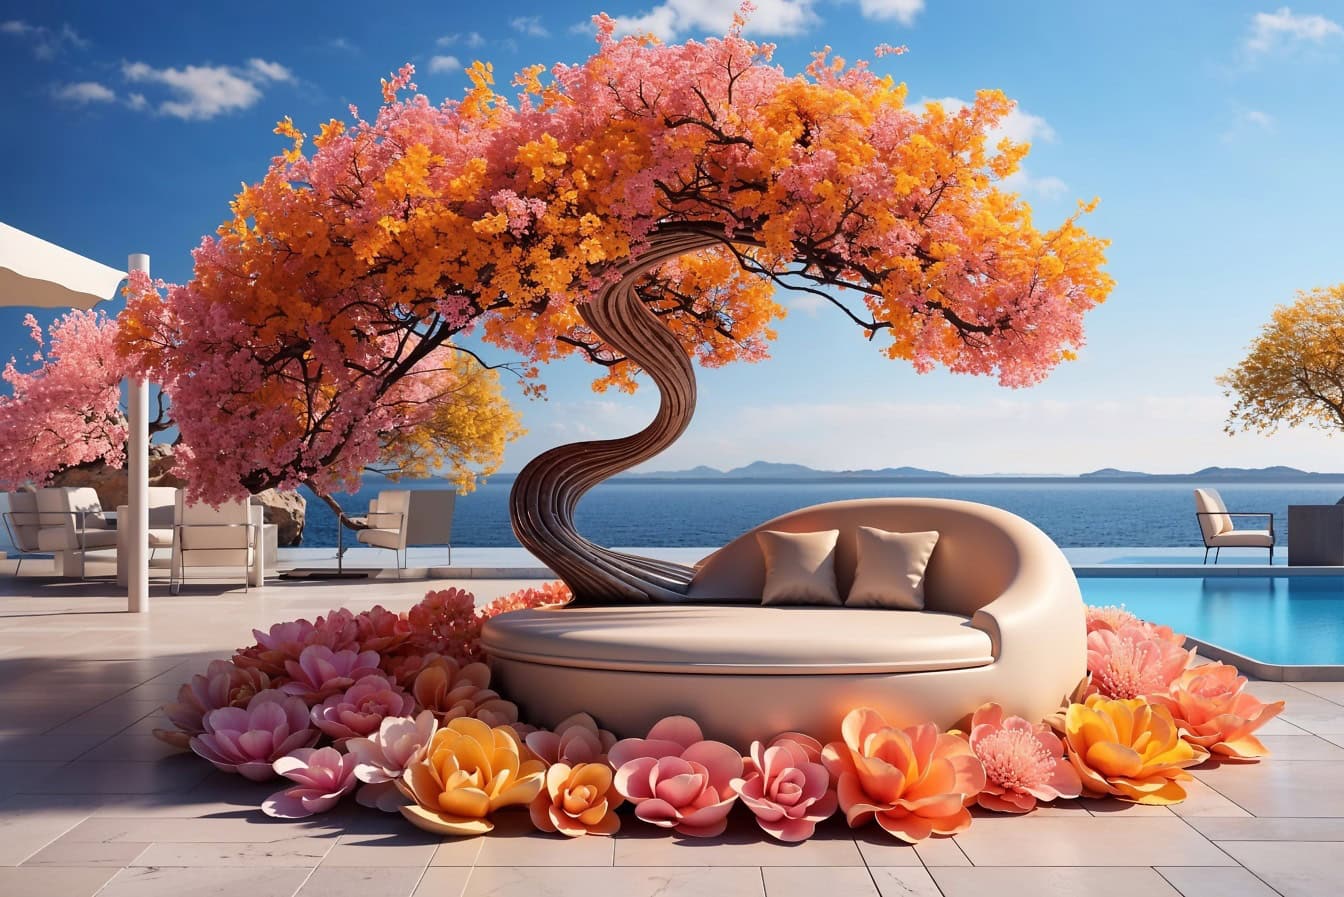 Диван зі шкіри пастельних тонів під деревом з оранжево-жовтими та рожевими квітами на терасі вілли на березі моря